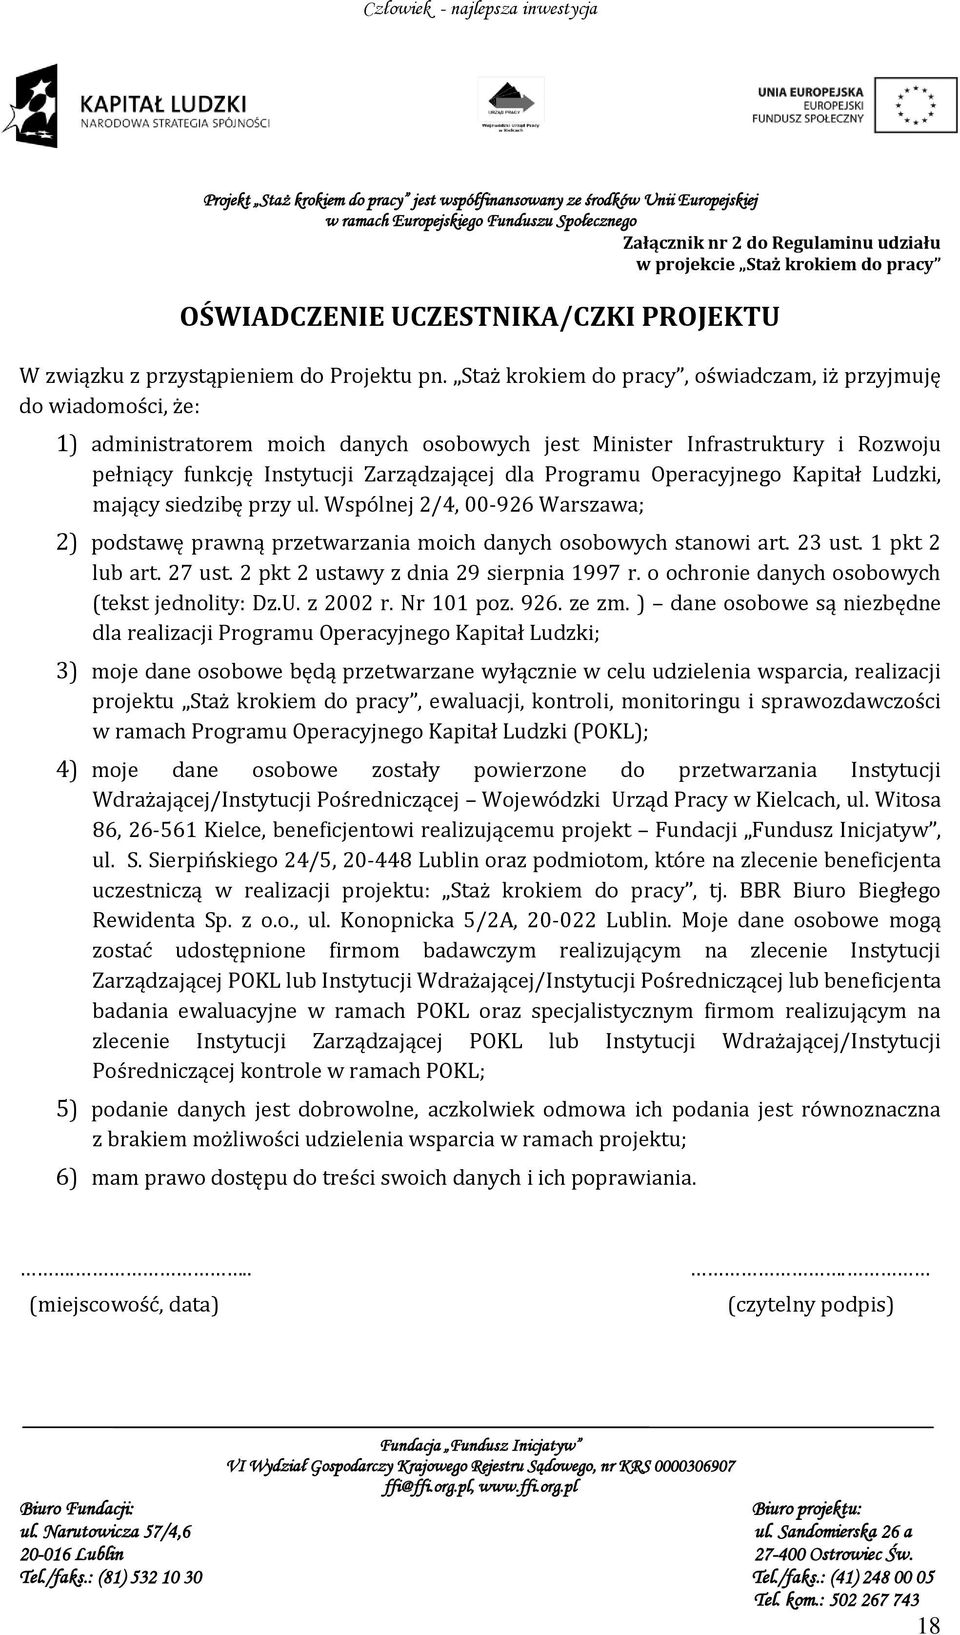 Programu Operacyjnego Kapitał Ludzki, mający siedzibę przy ul. Wspólnej 2/4, 00-926 Warszawa; 2) podstawę prawną przetwarzania moich danych osobowych stanowi art. 23 ust. 1 pkt 2 lub art. 27 ust.